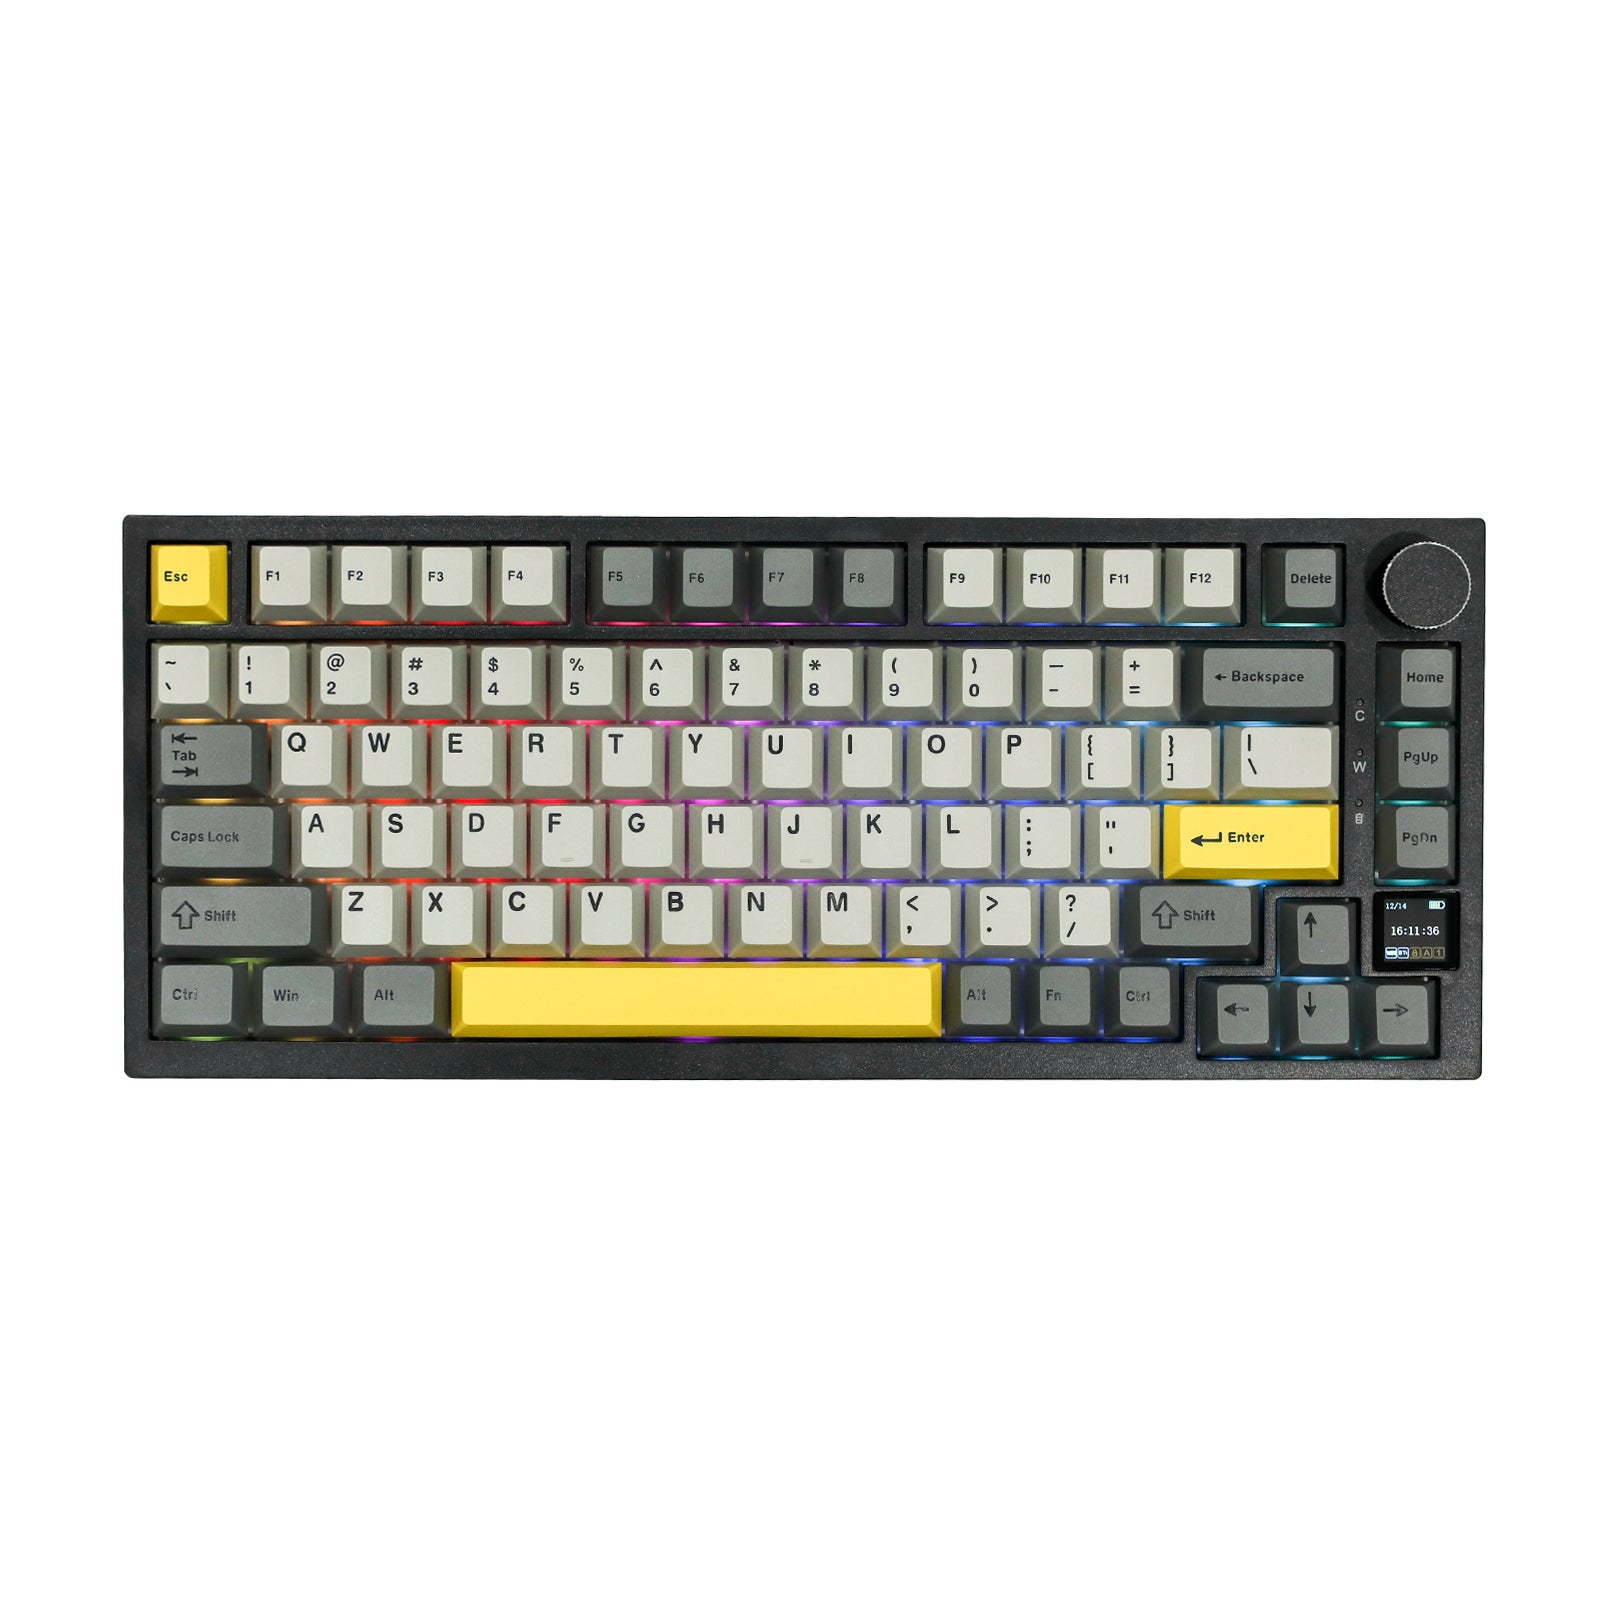 Ajazz AK820 Pro – ajazz keyboard